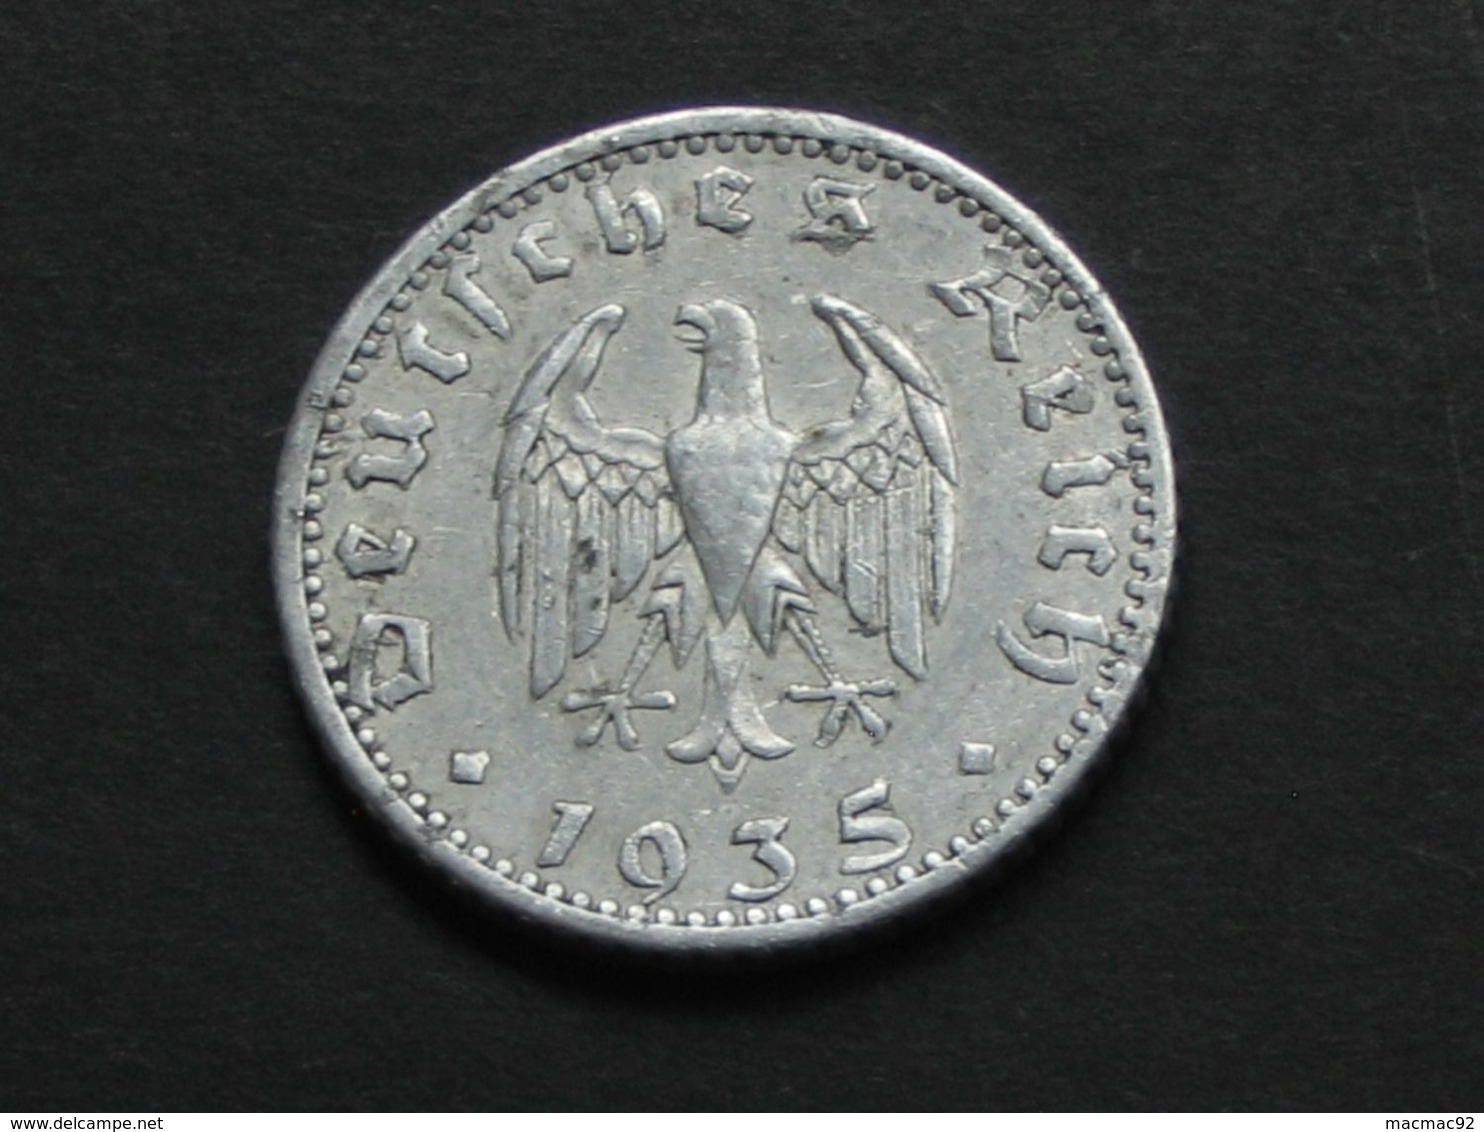 50 Reichspfennig 1935 A  - Germany- Allemagne 3 Eme Reich   **** EN ACHAT IMMEDIAT **** - 50 Reichspfennig